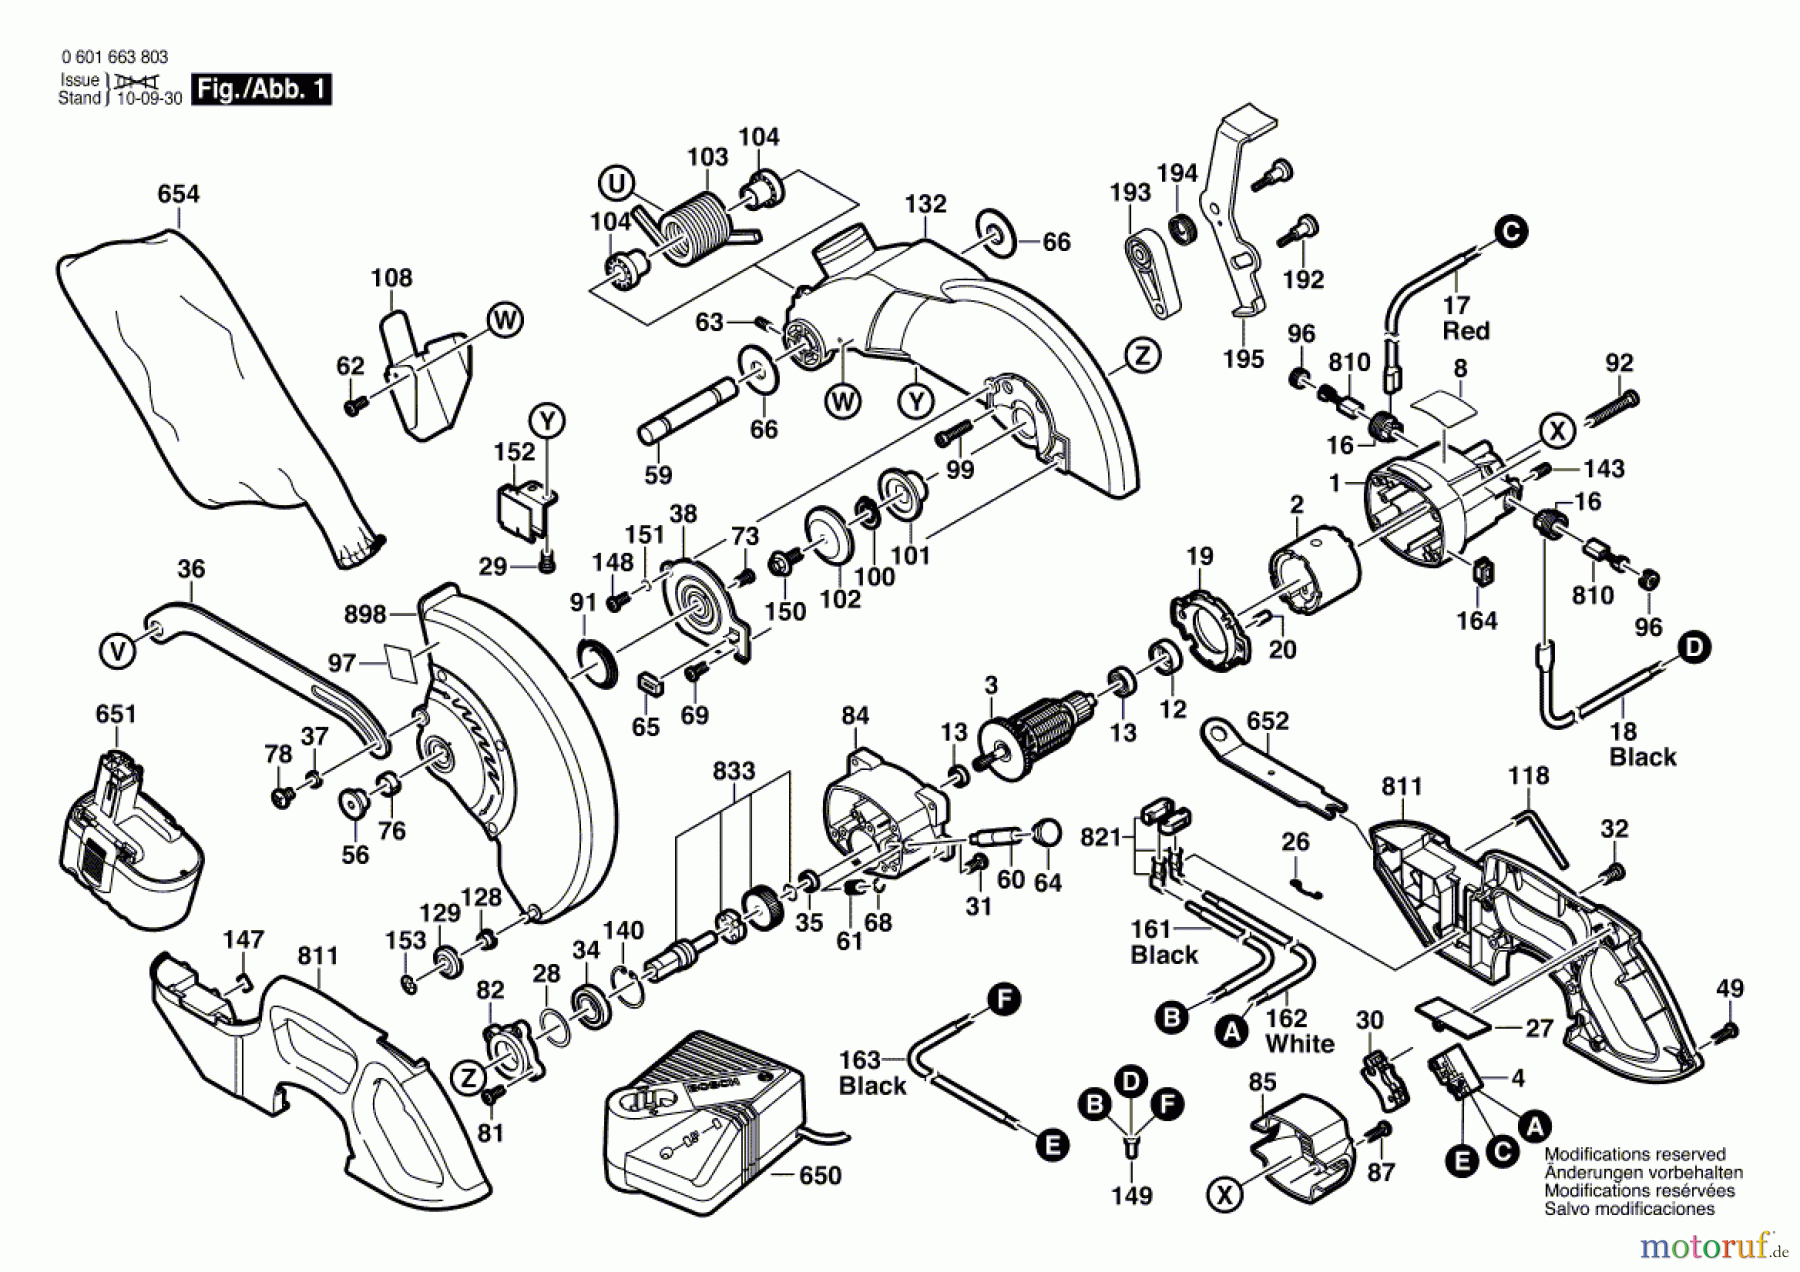  Bosch Werkzeug Sägetisch GKG 24 V Seite 1